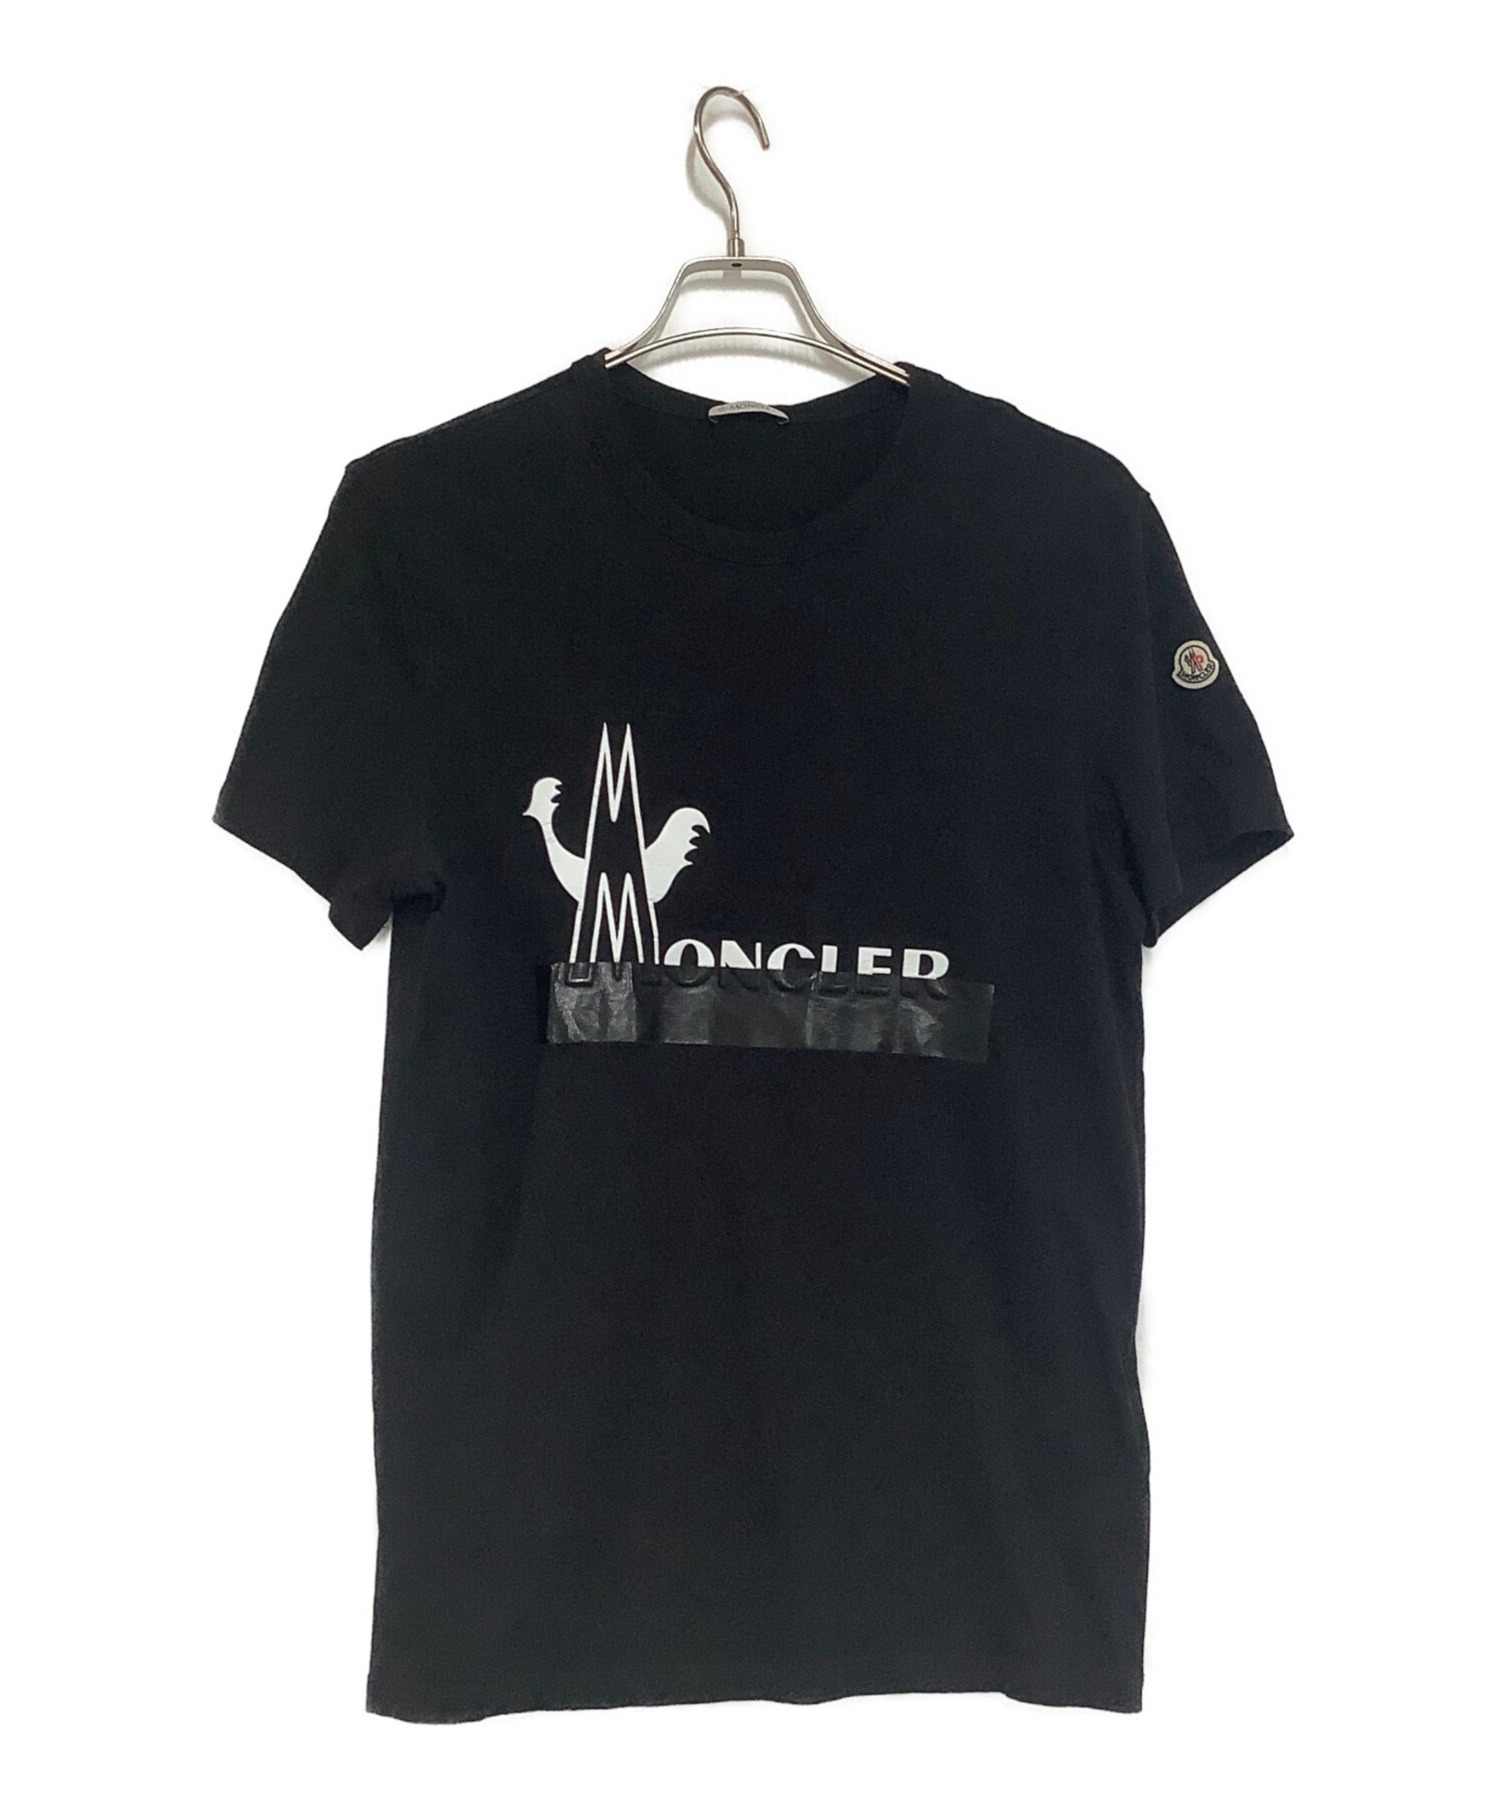 モンクレール MONCLER Tシャツ ブラック サイズM-